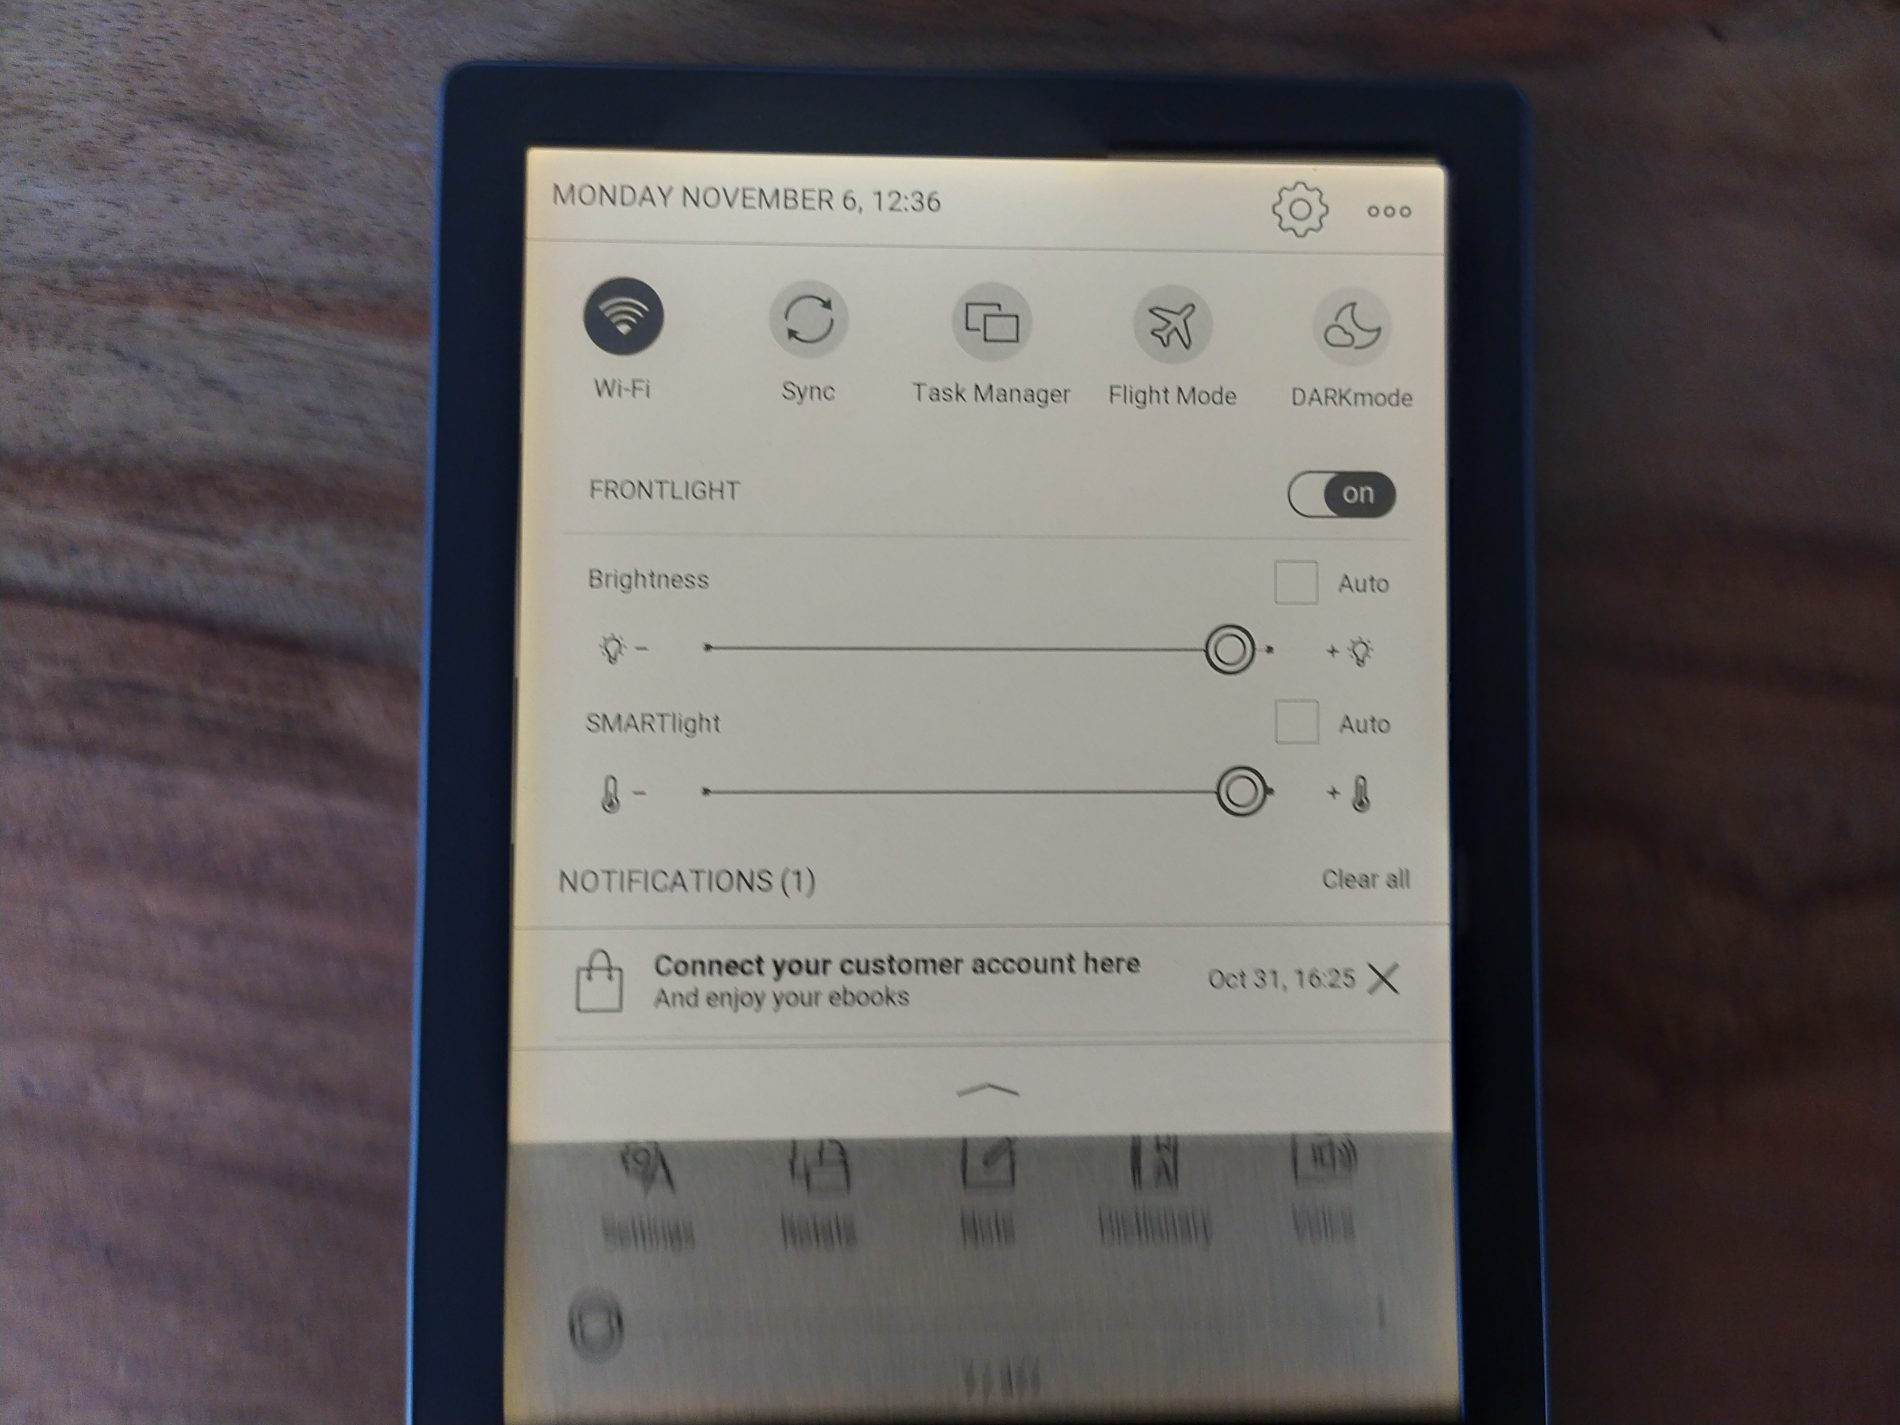 Pocketbook Verse Pro: Smartlight front-lit display